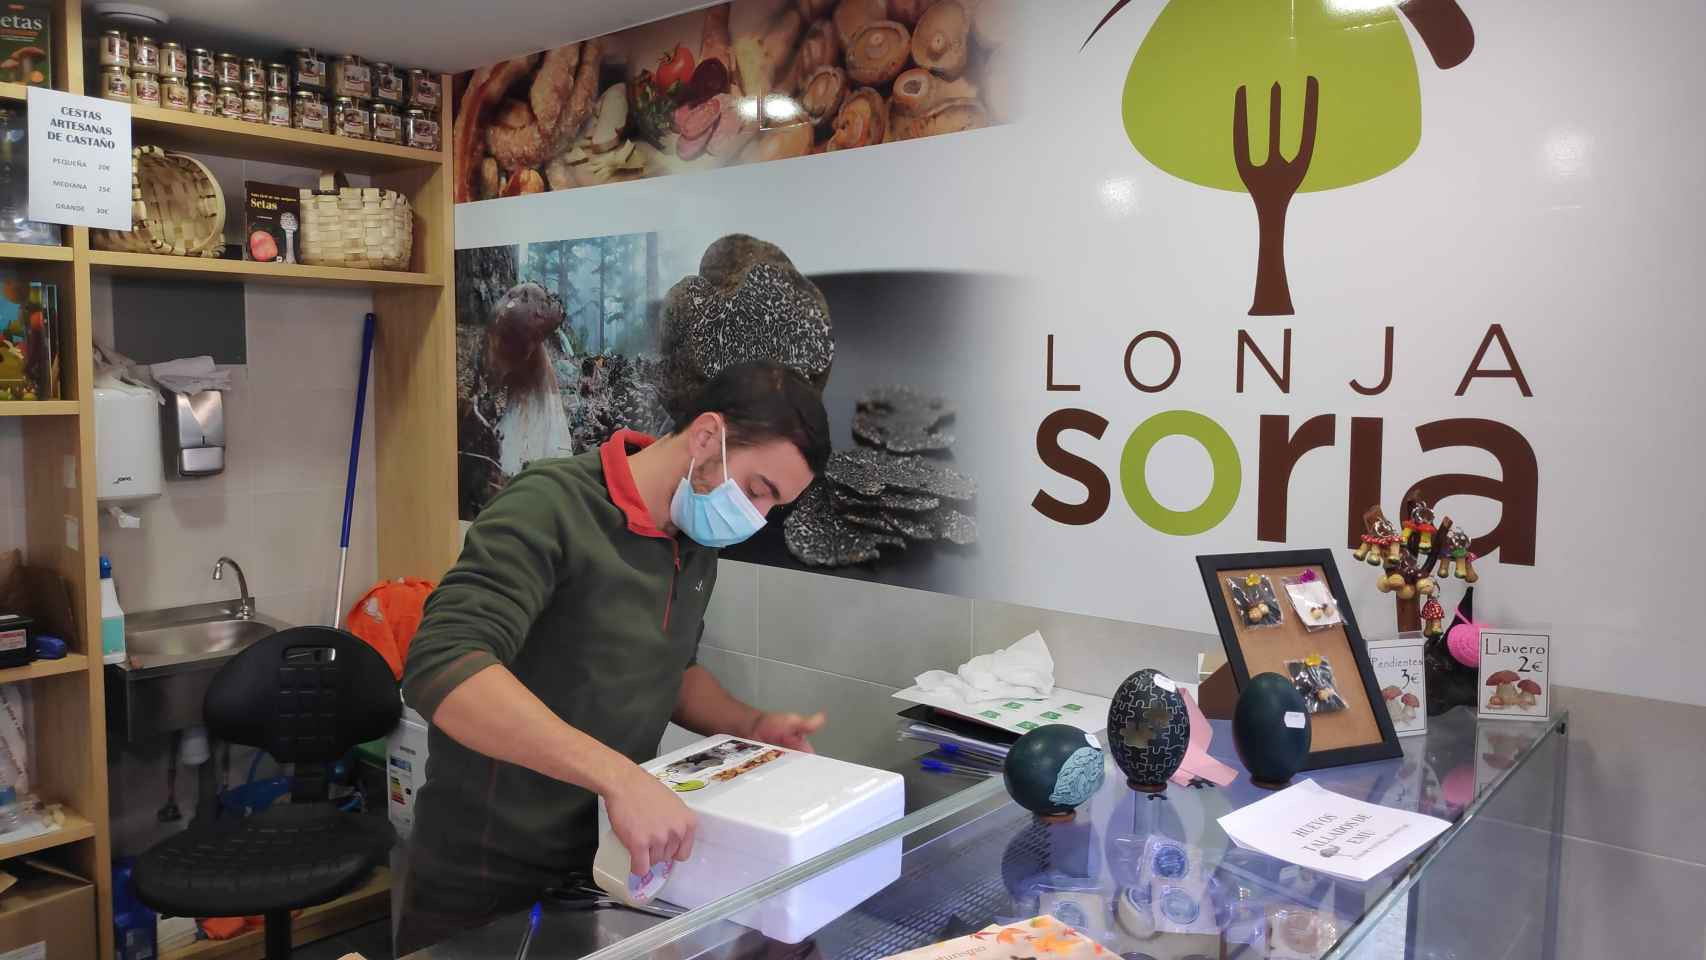 Un trabajador de la lonja micológica de Soria, que vende a través de Compraensoria.com, preparando un envío de setas.